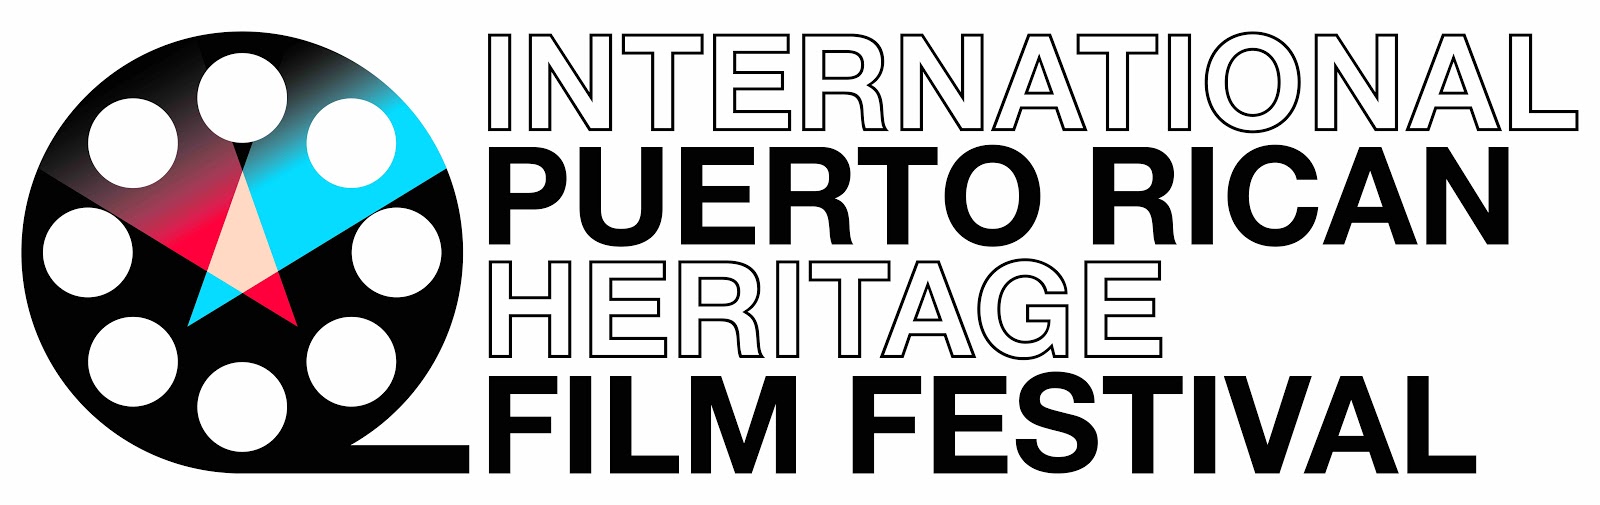 Festival Internacional de Cine del Patrimonio Puertorriqueño escrito en letras negras y en negrita junto a un gráfico de rollo de película.